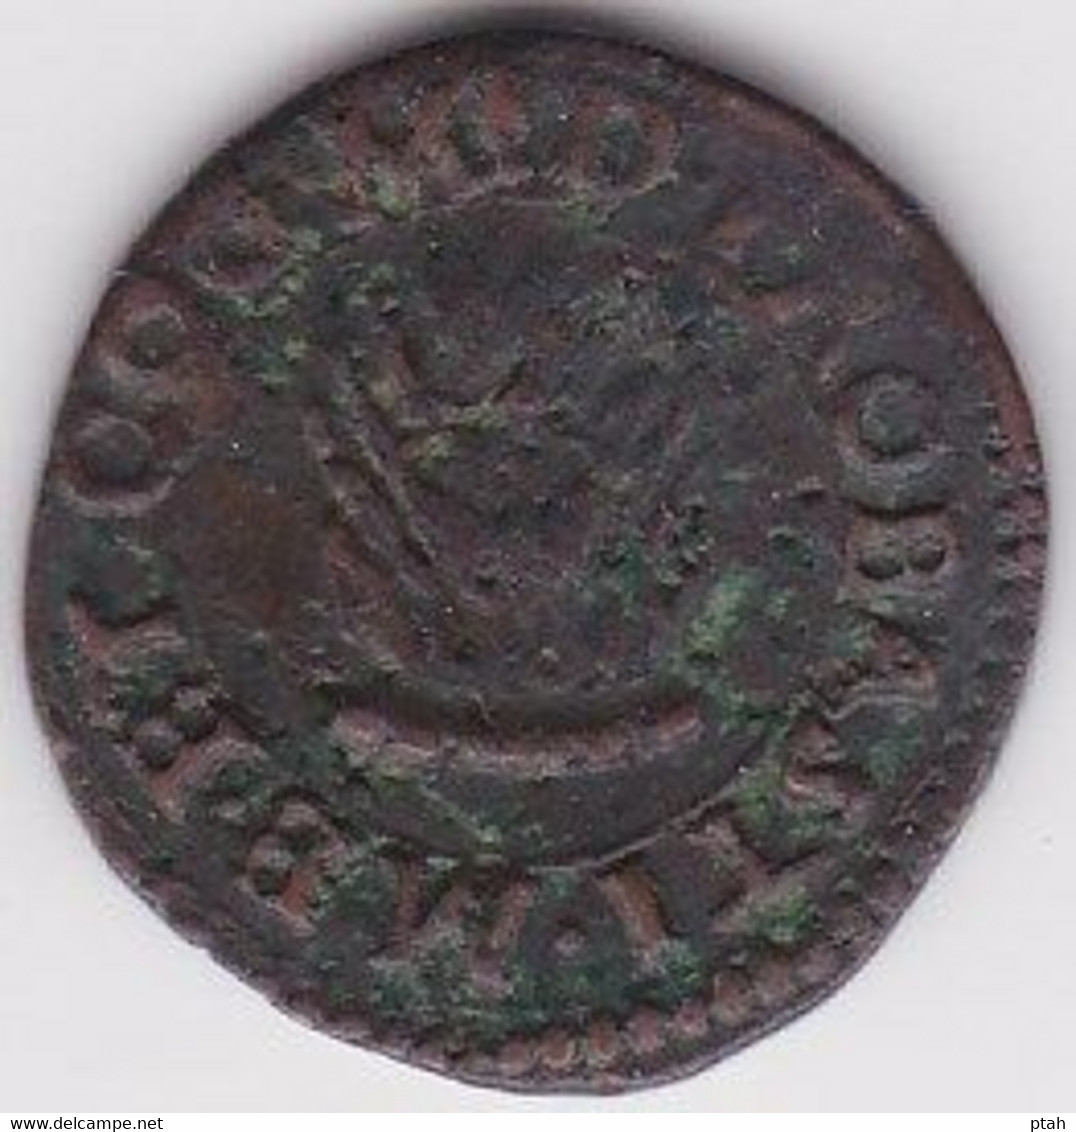 MANTUA, Francesco II, Quattrino - Monnaies Féodales